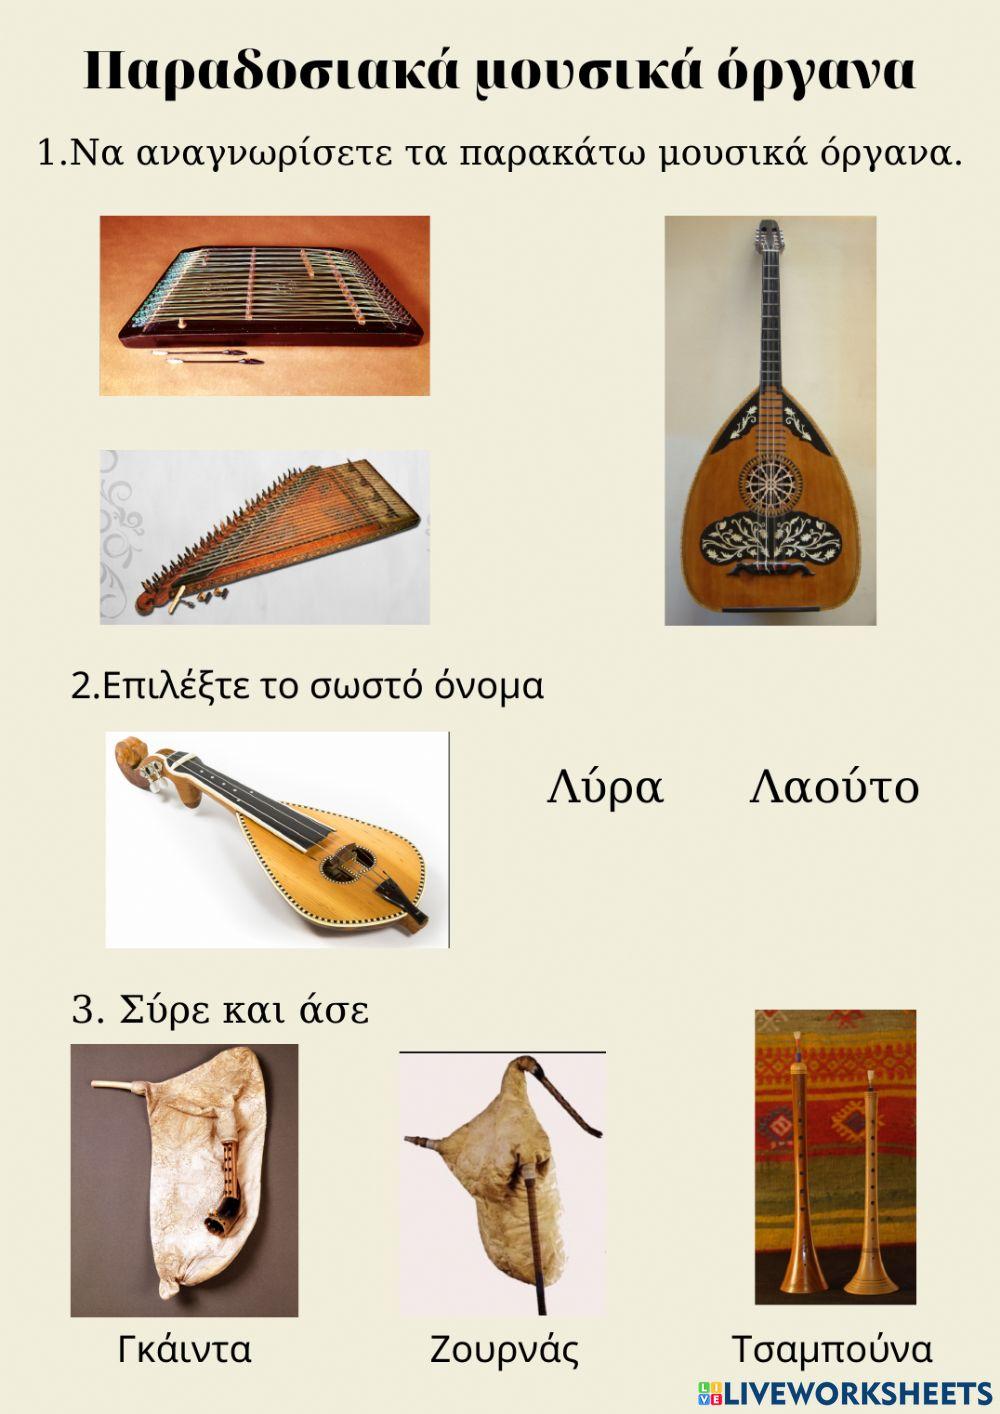 Παραδοσιακά μουσικά όργανα